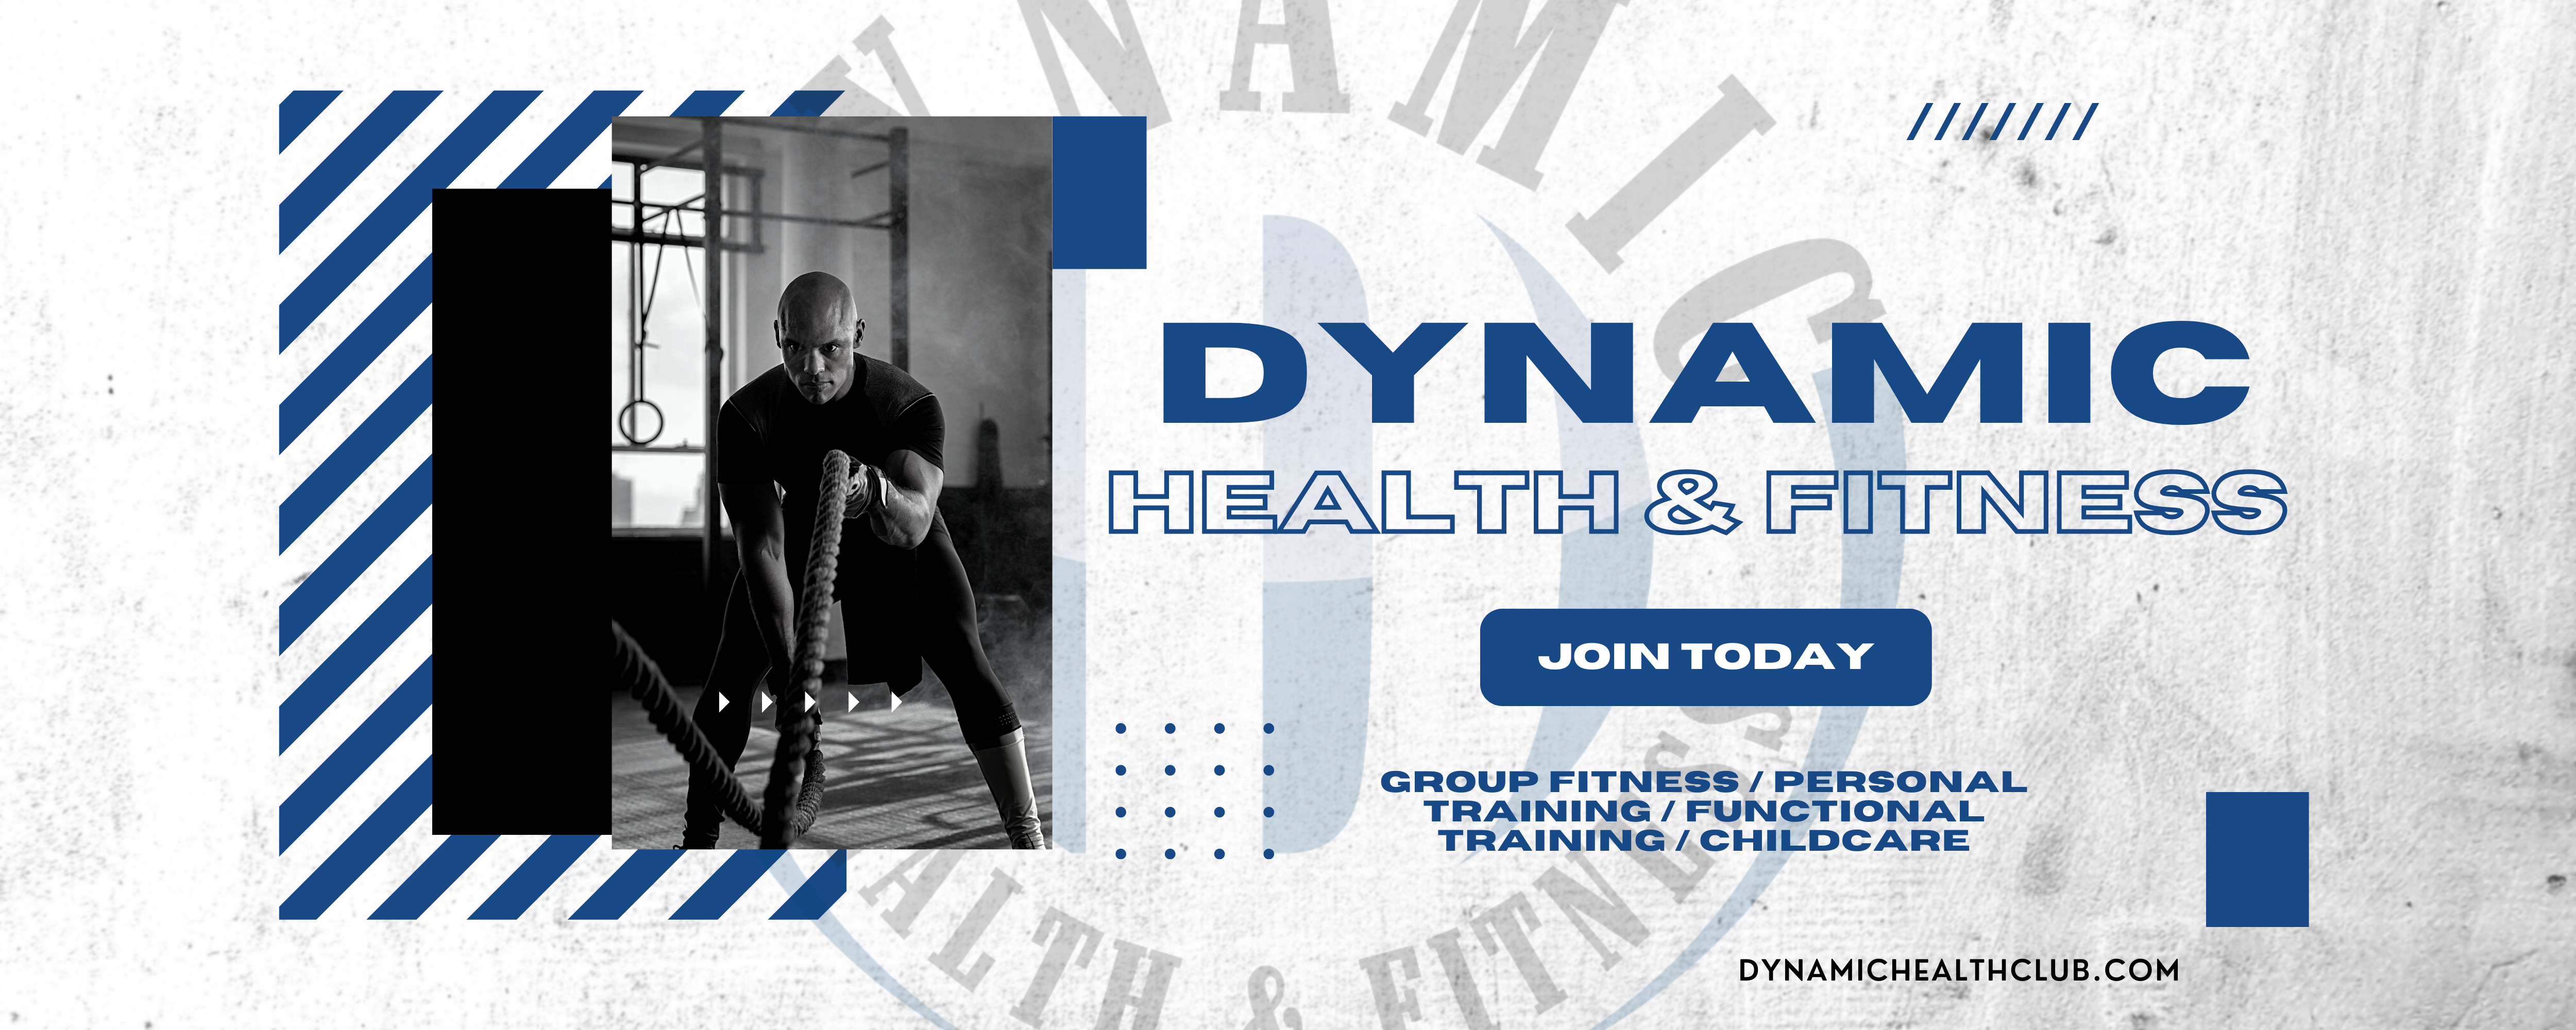 Dynamic Health & Fitness - Slide_02